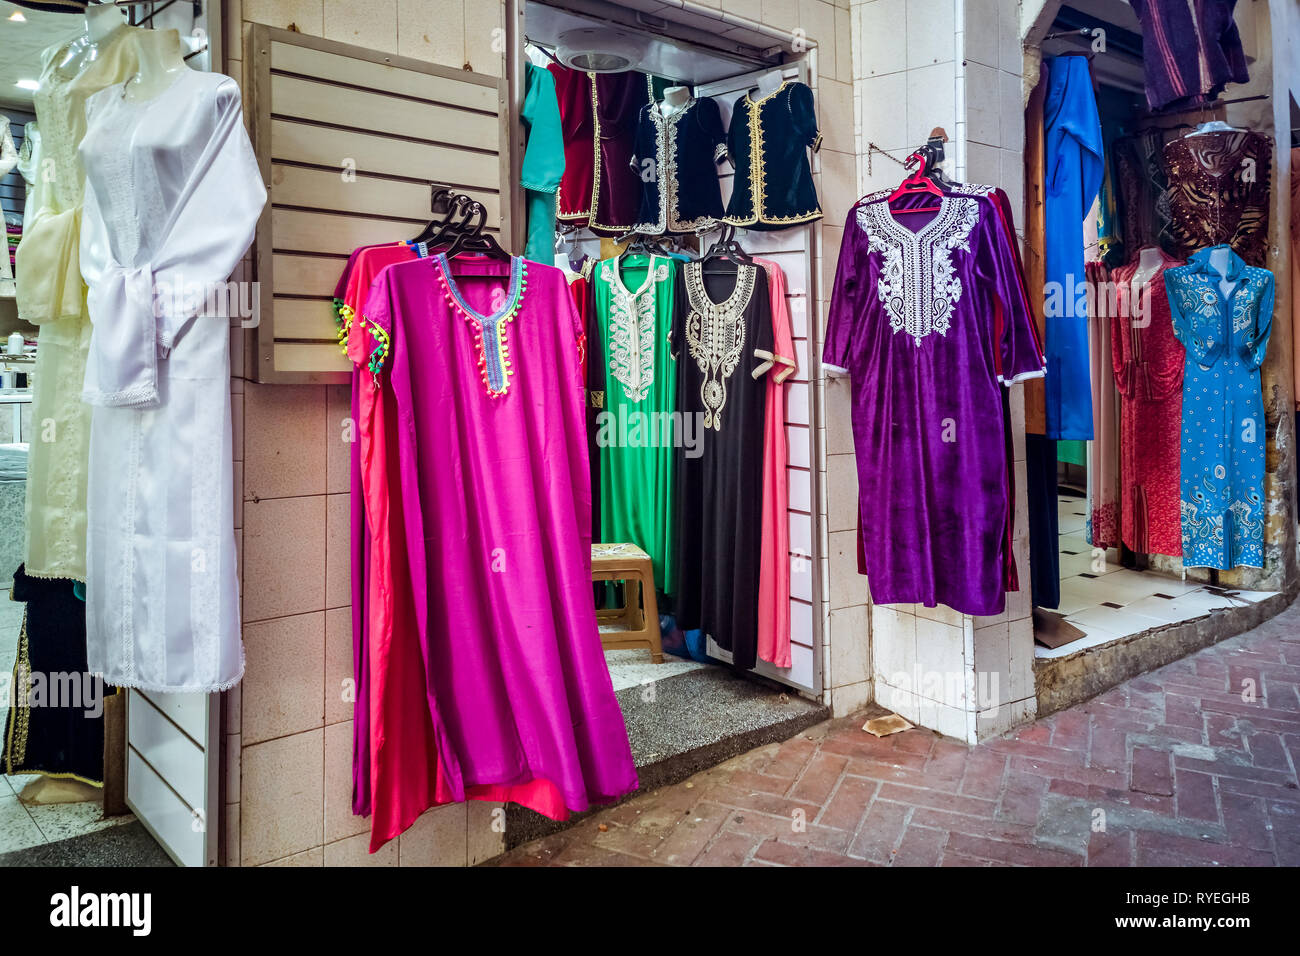 Shop marokkanische kleider in der Medina von Tanger, Marokko  Stockfotografie - Alamy